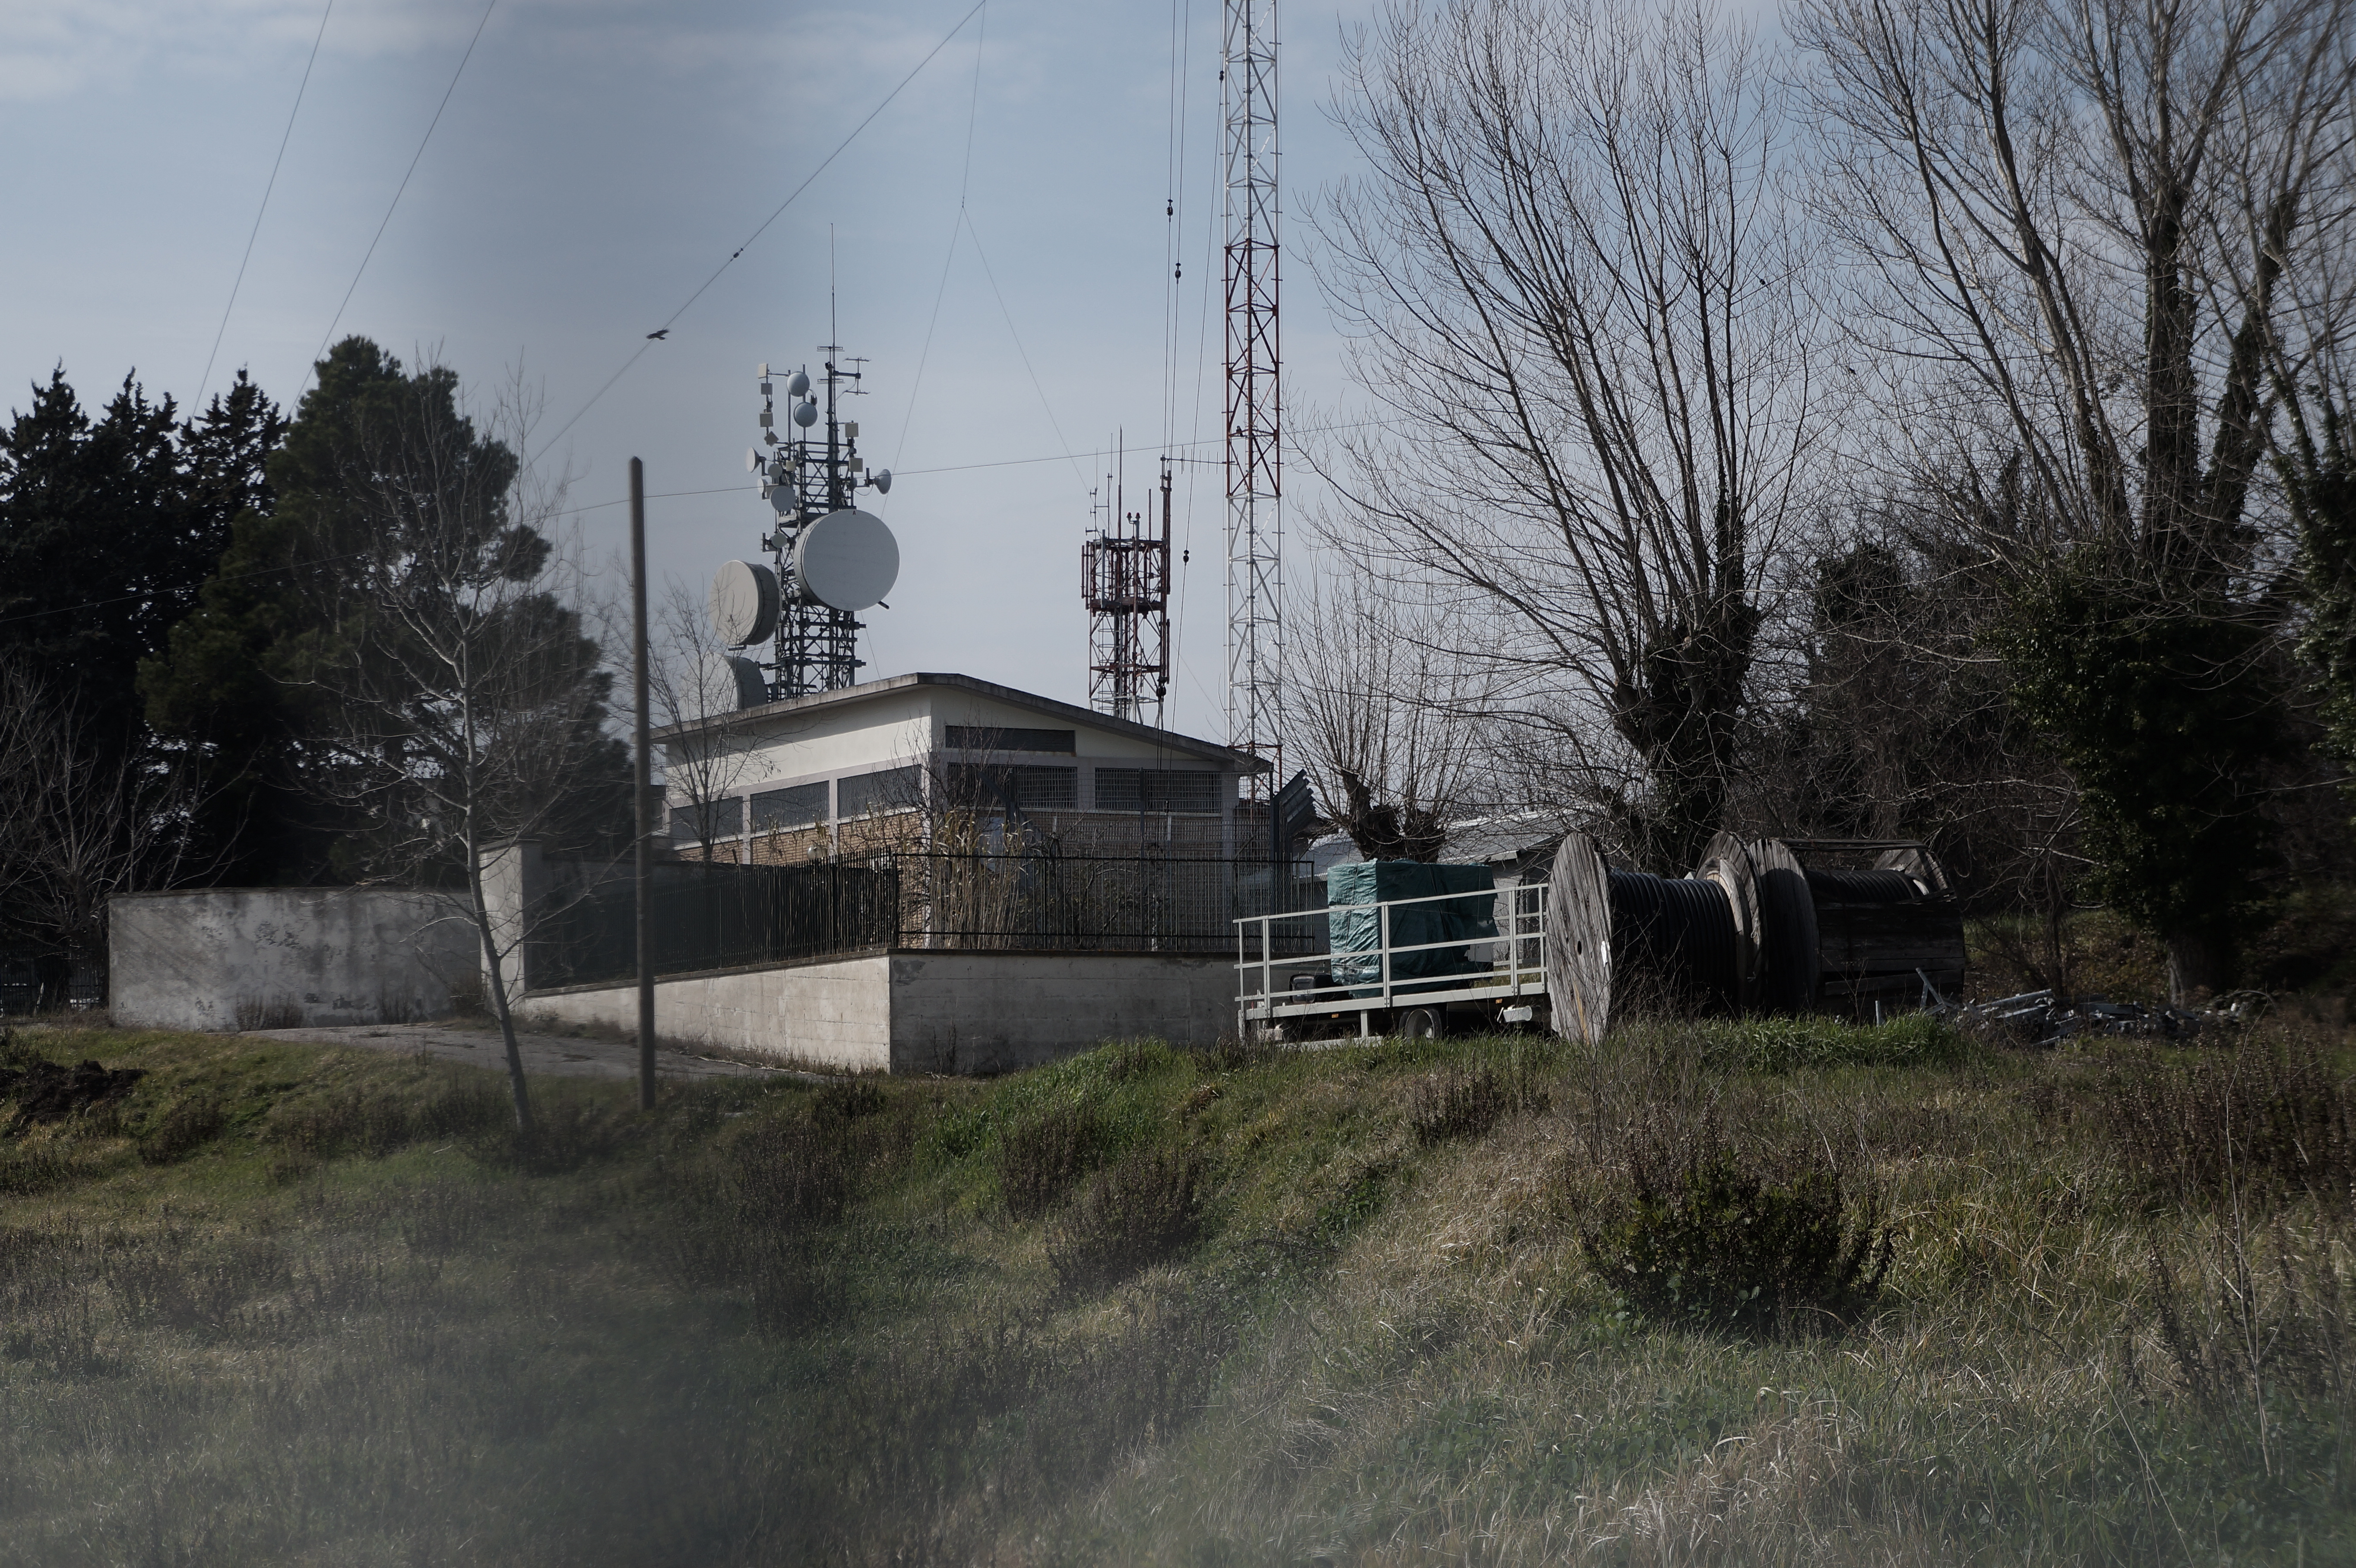 Italie - Antennes relais (Ancône)